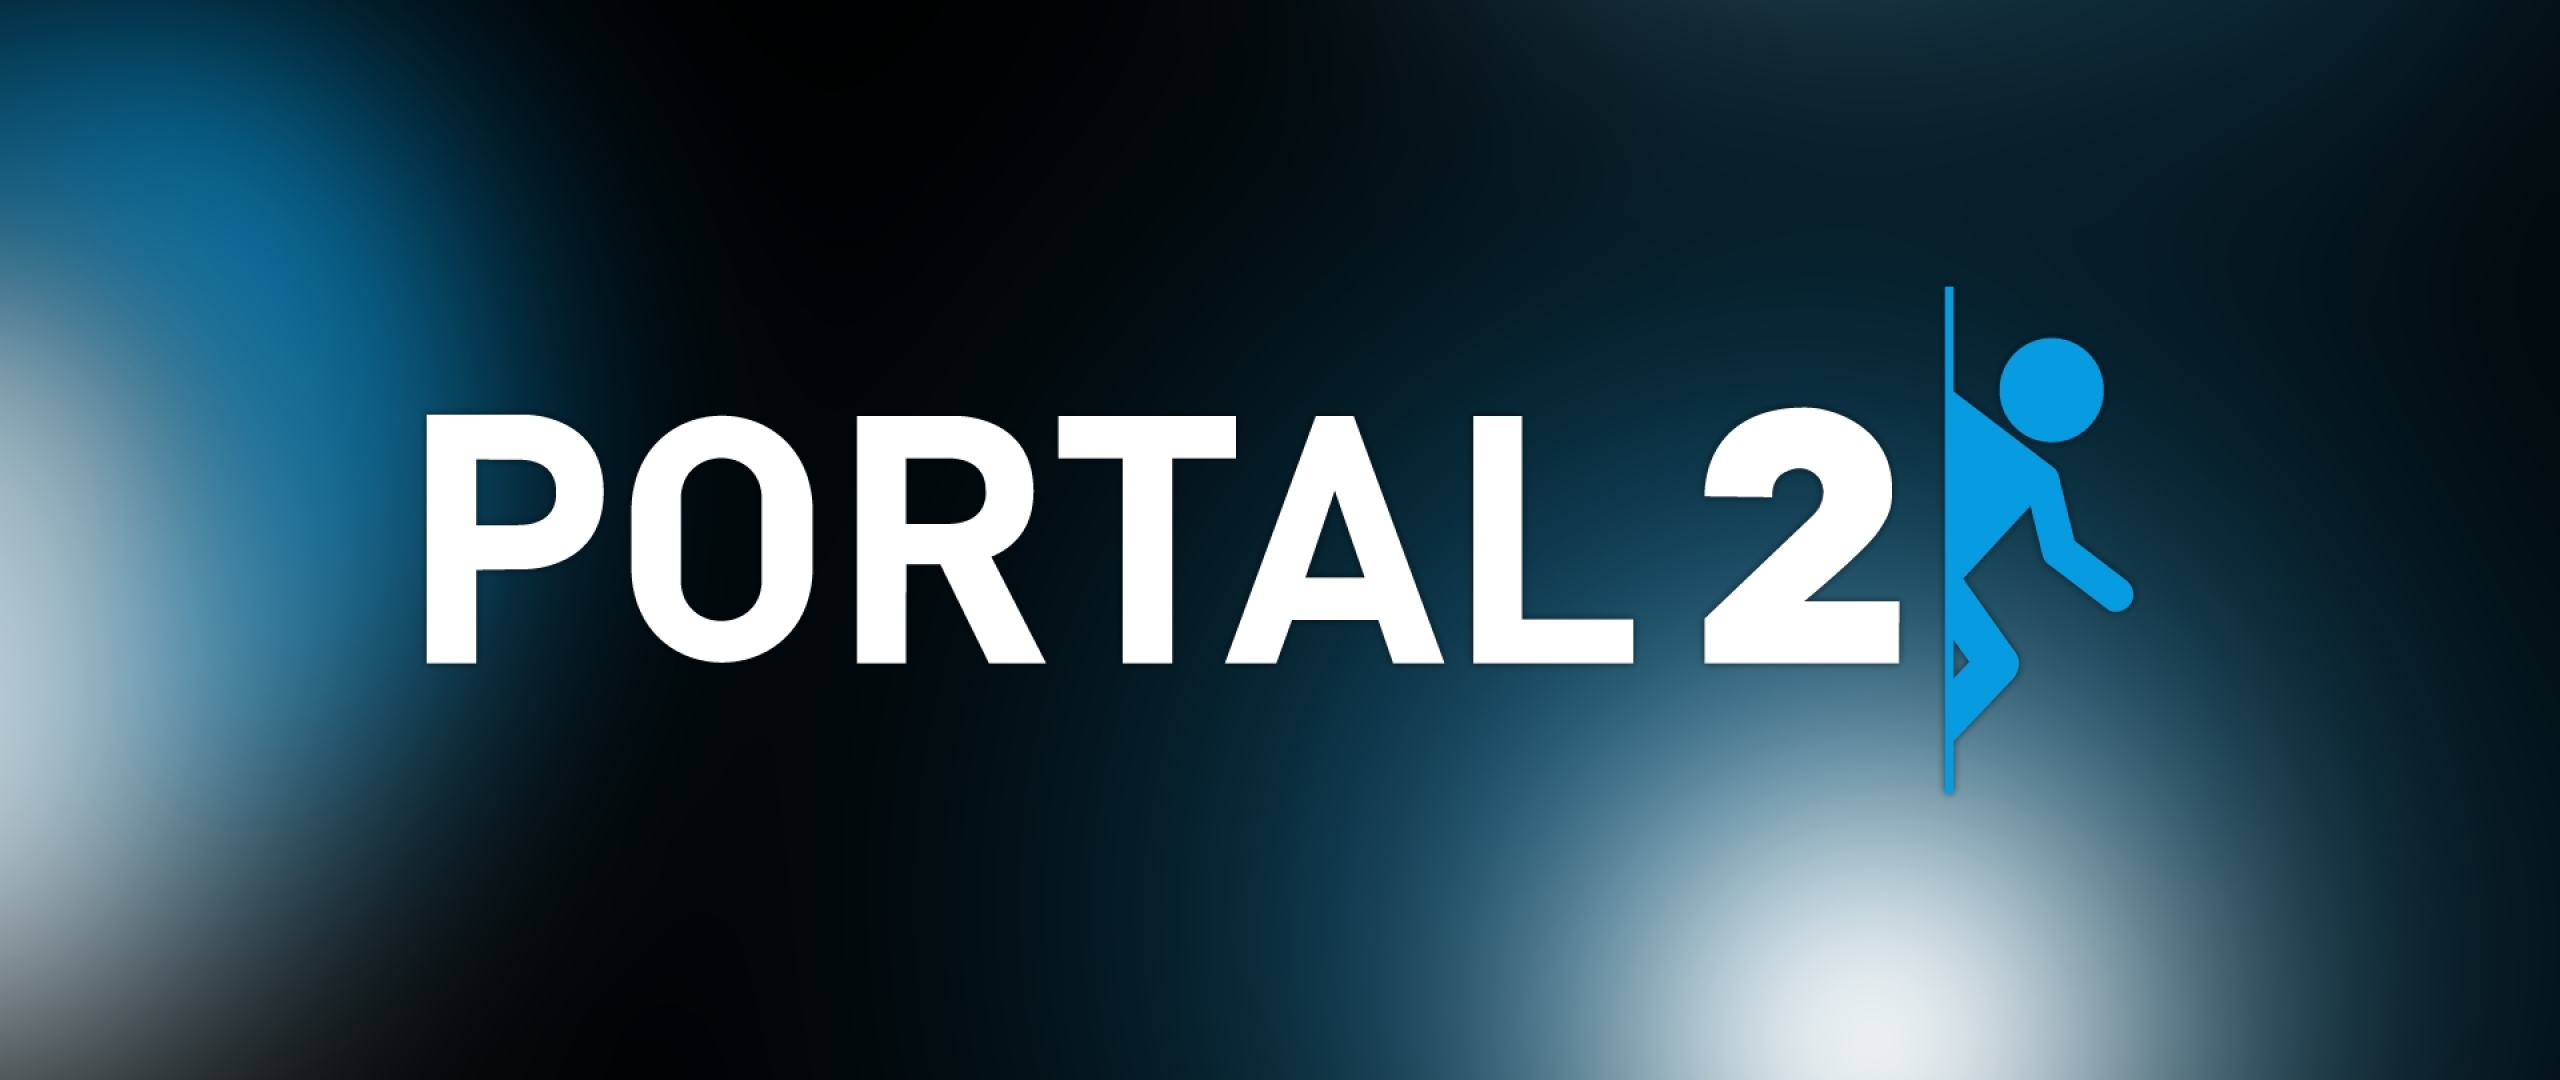 Portal 2 на mac os фото 59